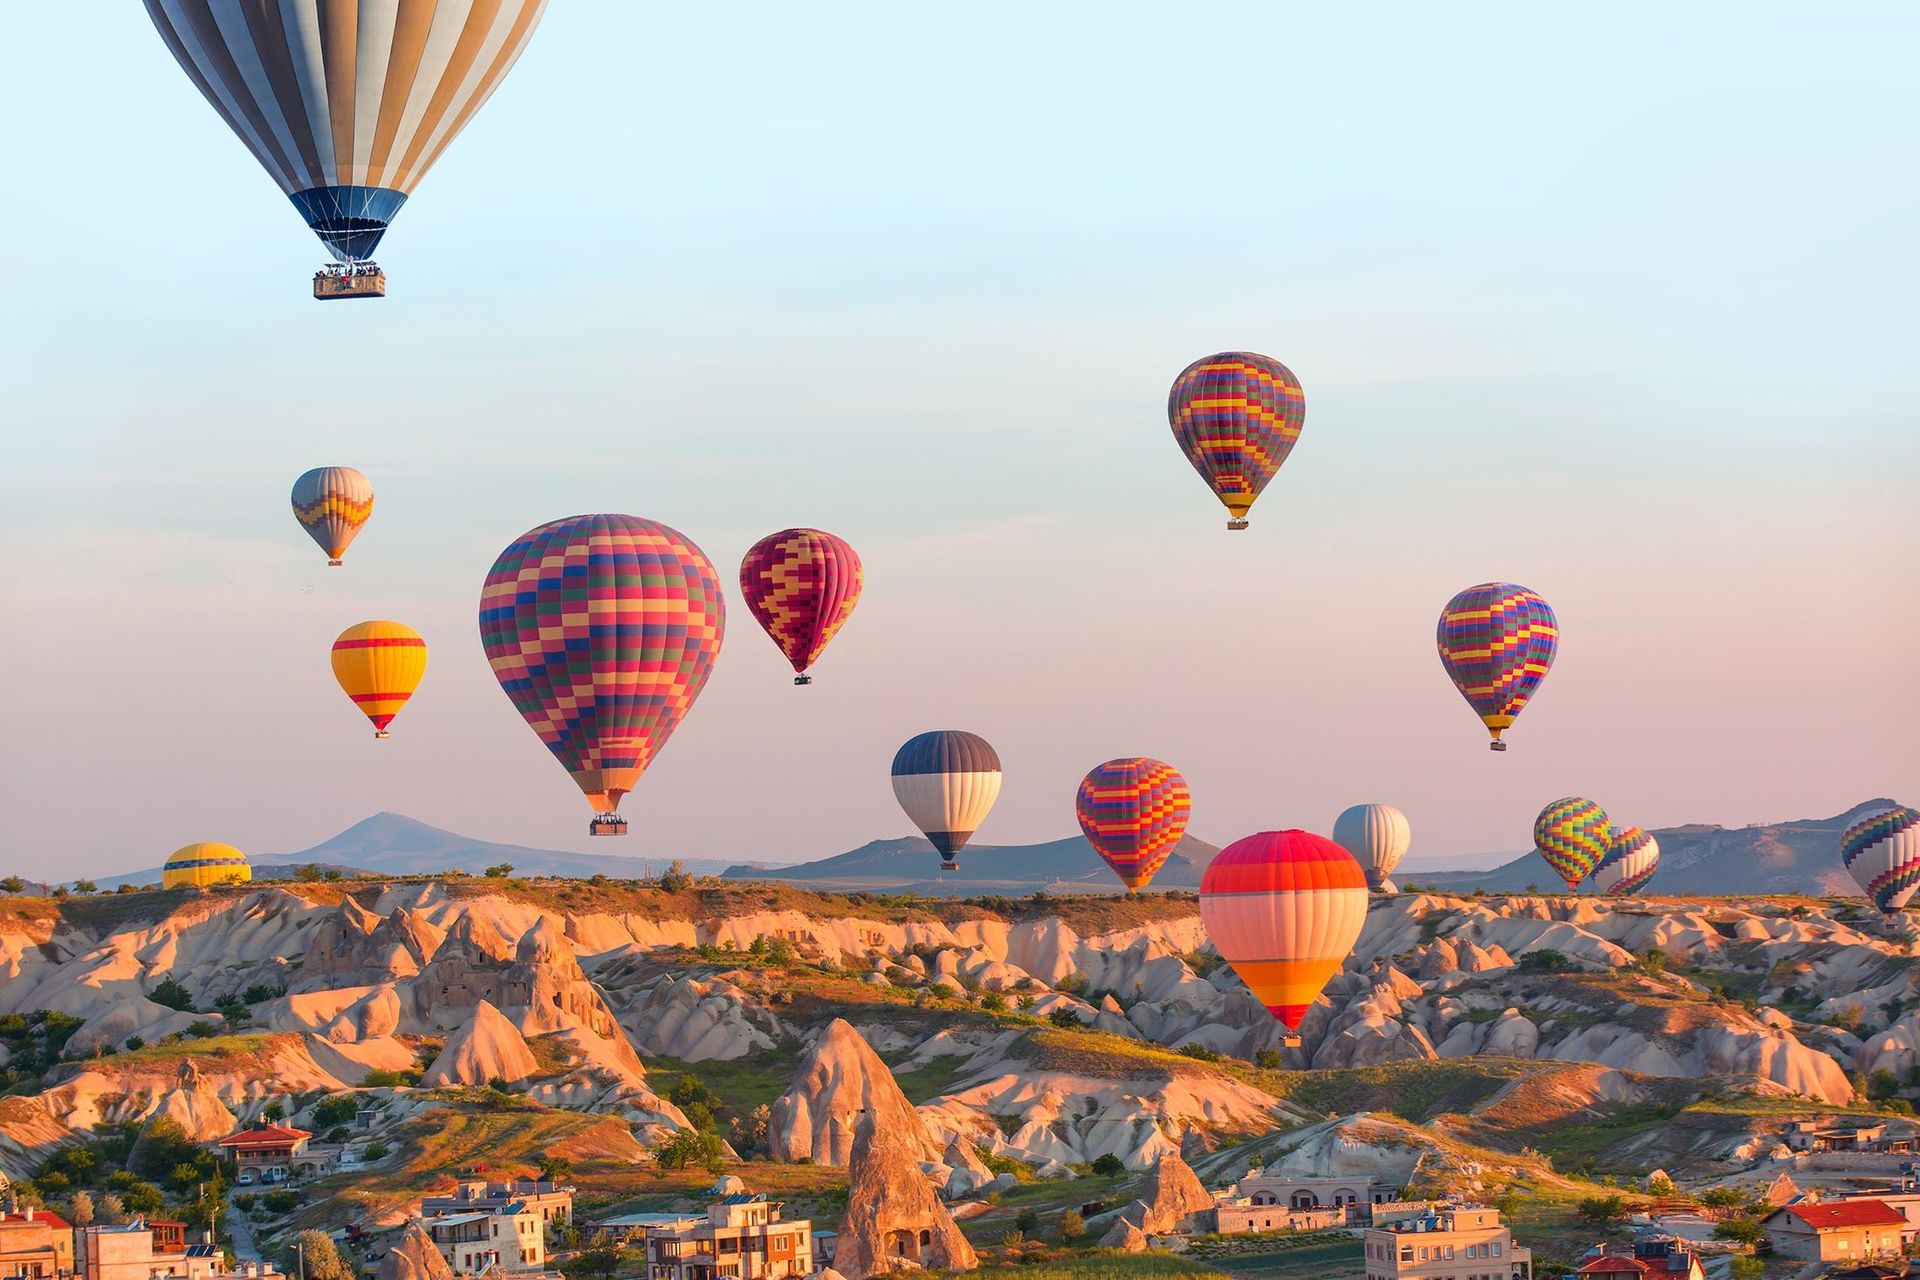 Hot air balloon festival kicks off in Turkey's famed Cappadocia Winning